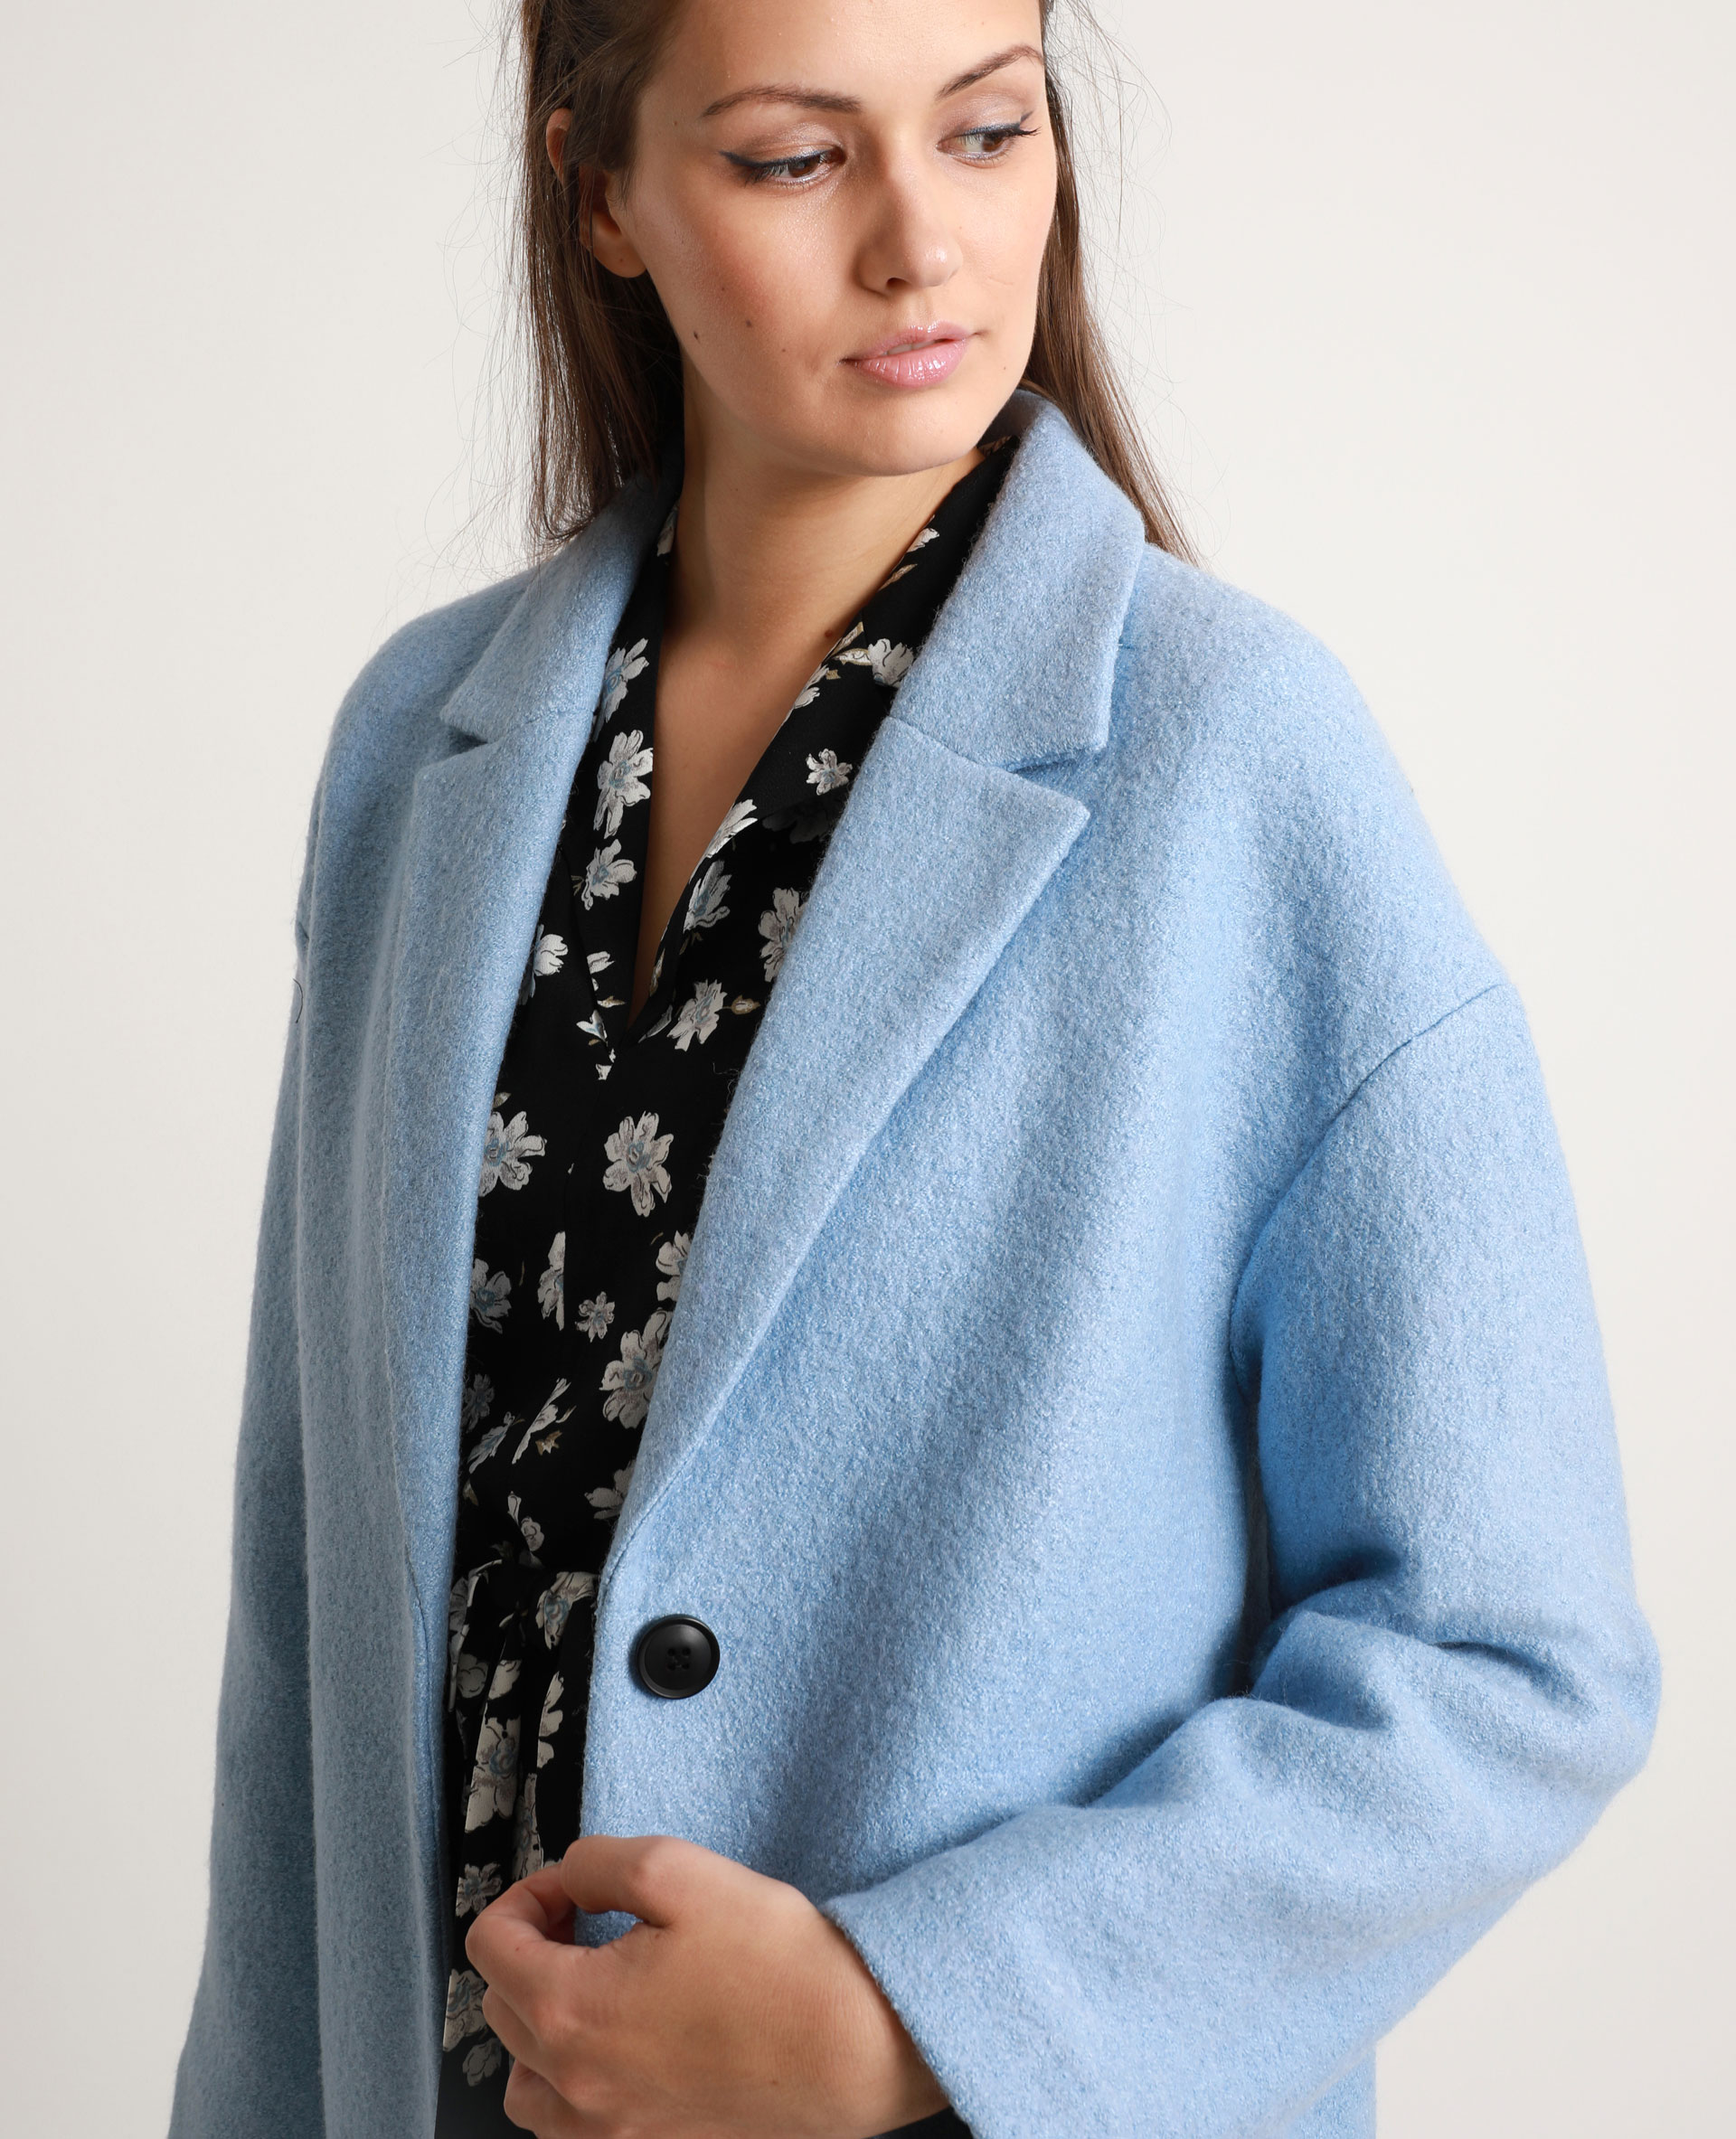 manteau en laine femme bleu